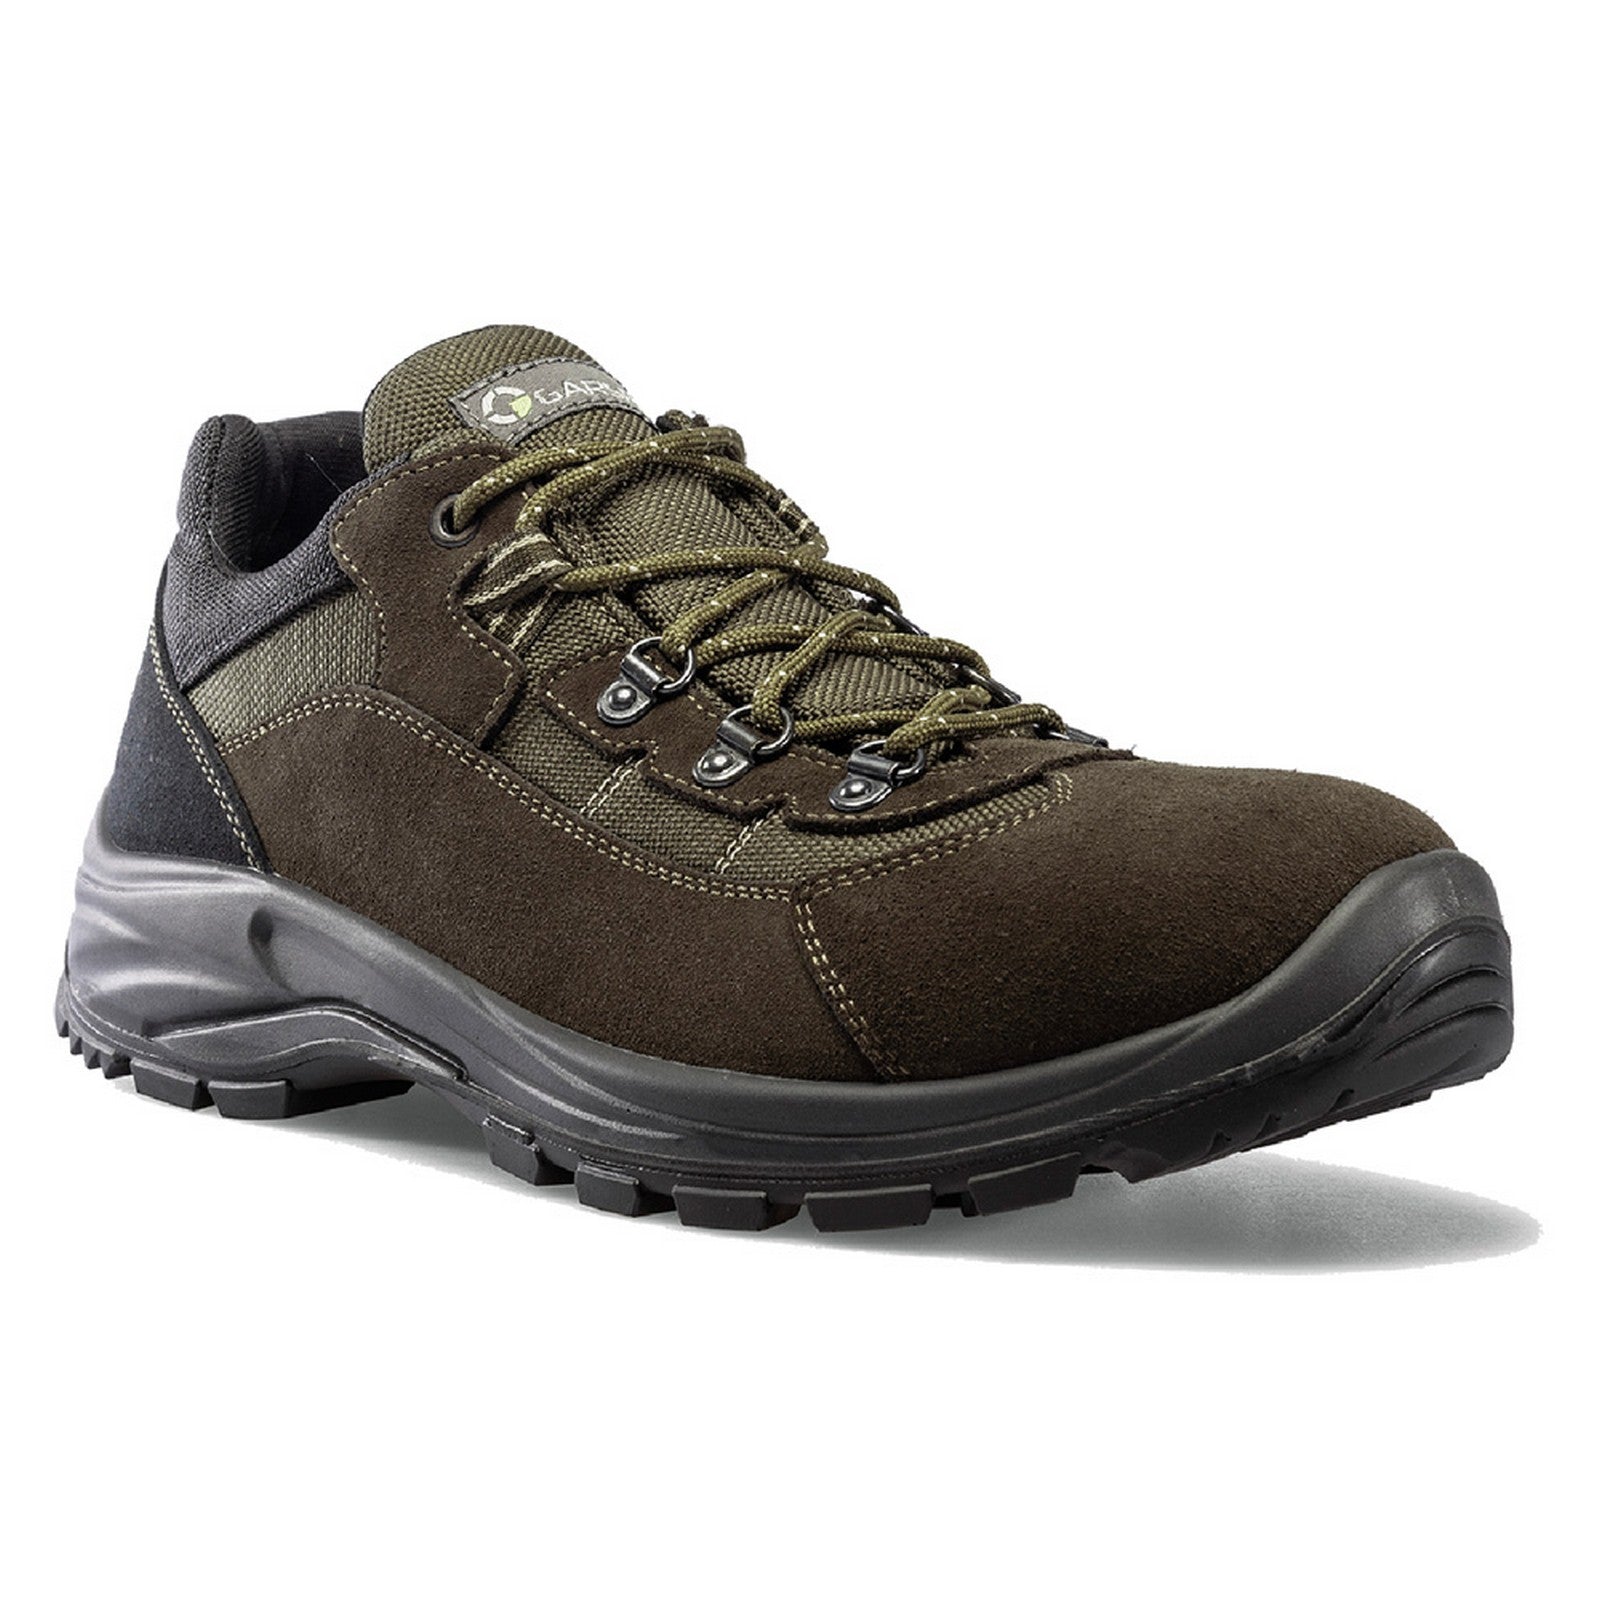 1coppia scarpe per trekking 'kamikaze' n. 39 - muschio cod:ferx.1062483nlm